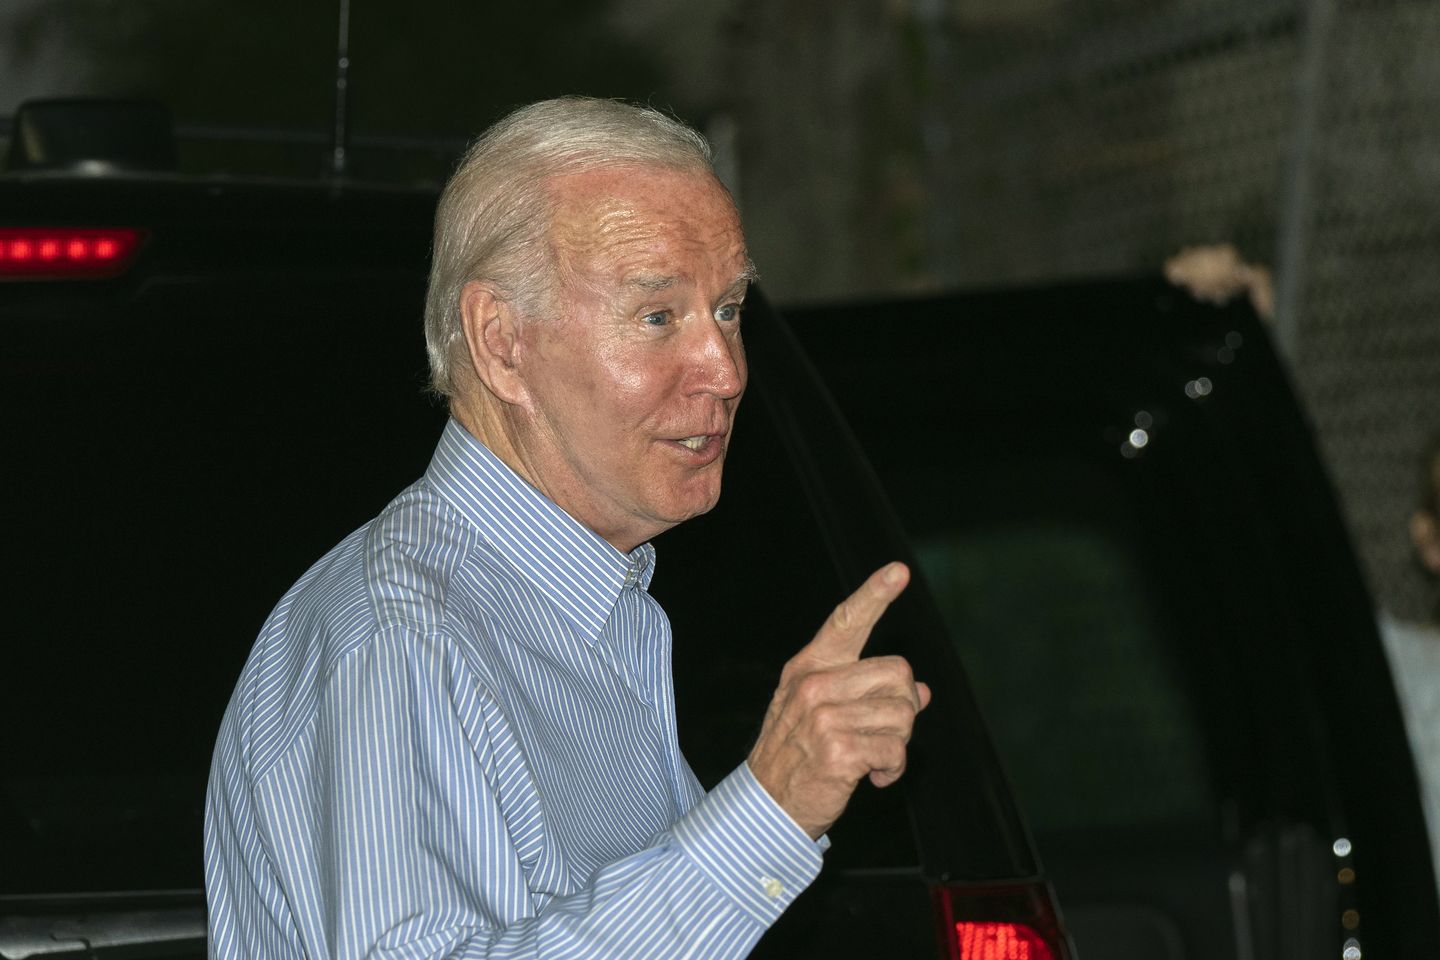 Joe Biden bermain malu-malu di St. Croix, menyimpan rencana 2024 dekat dengan rompi